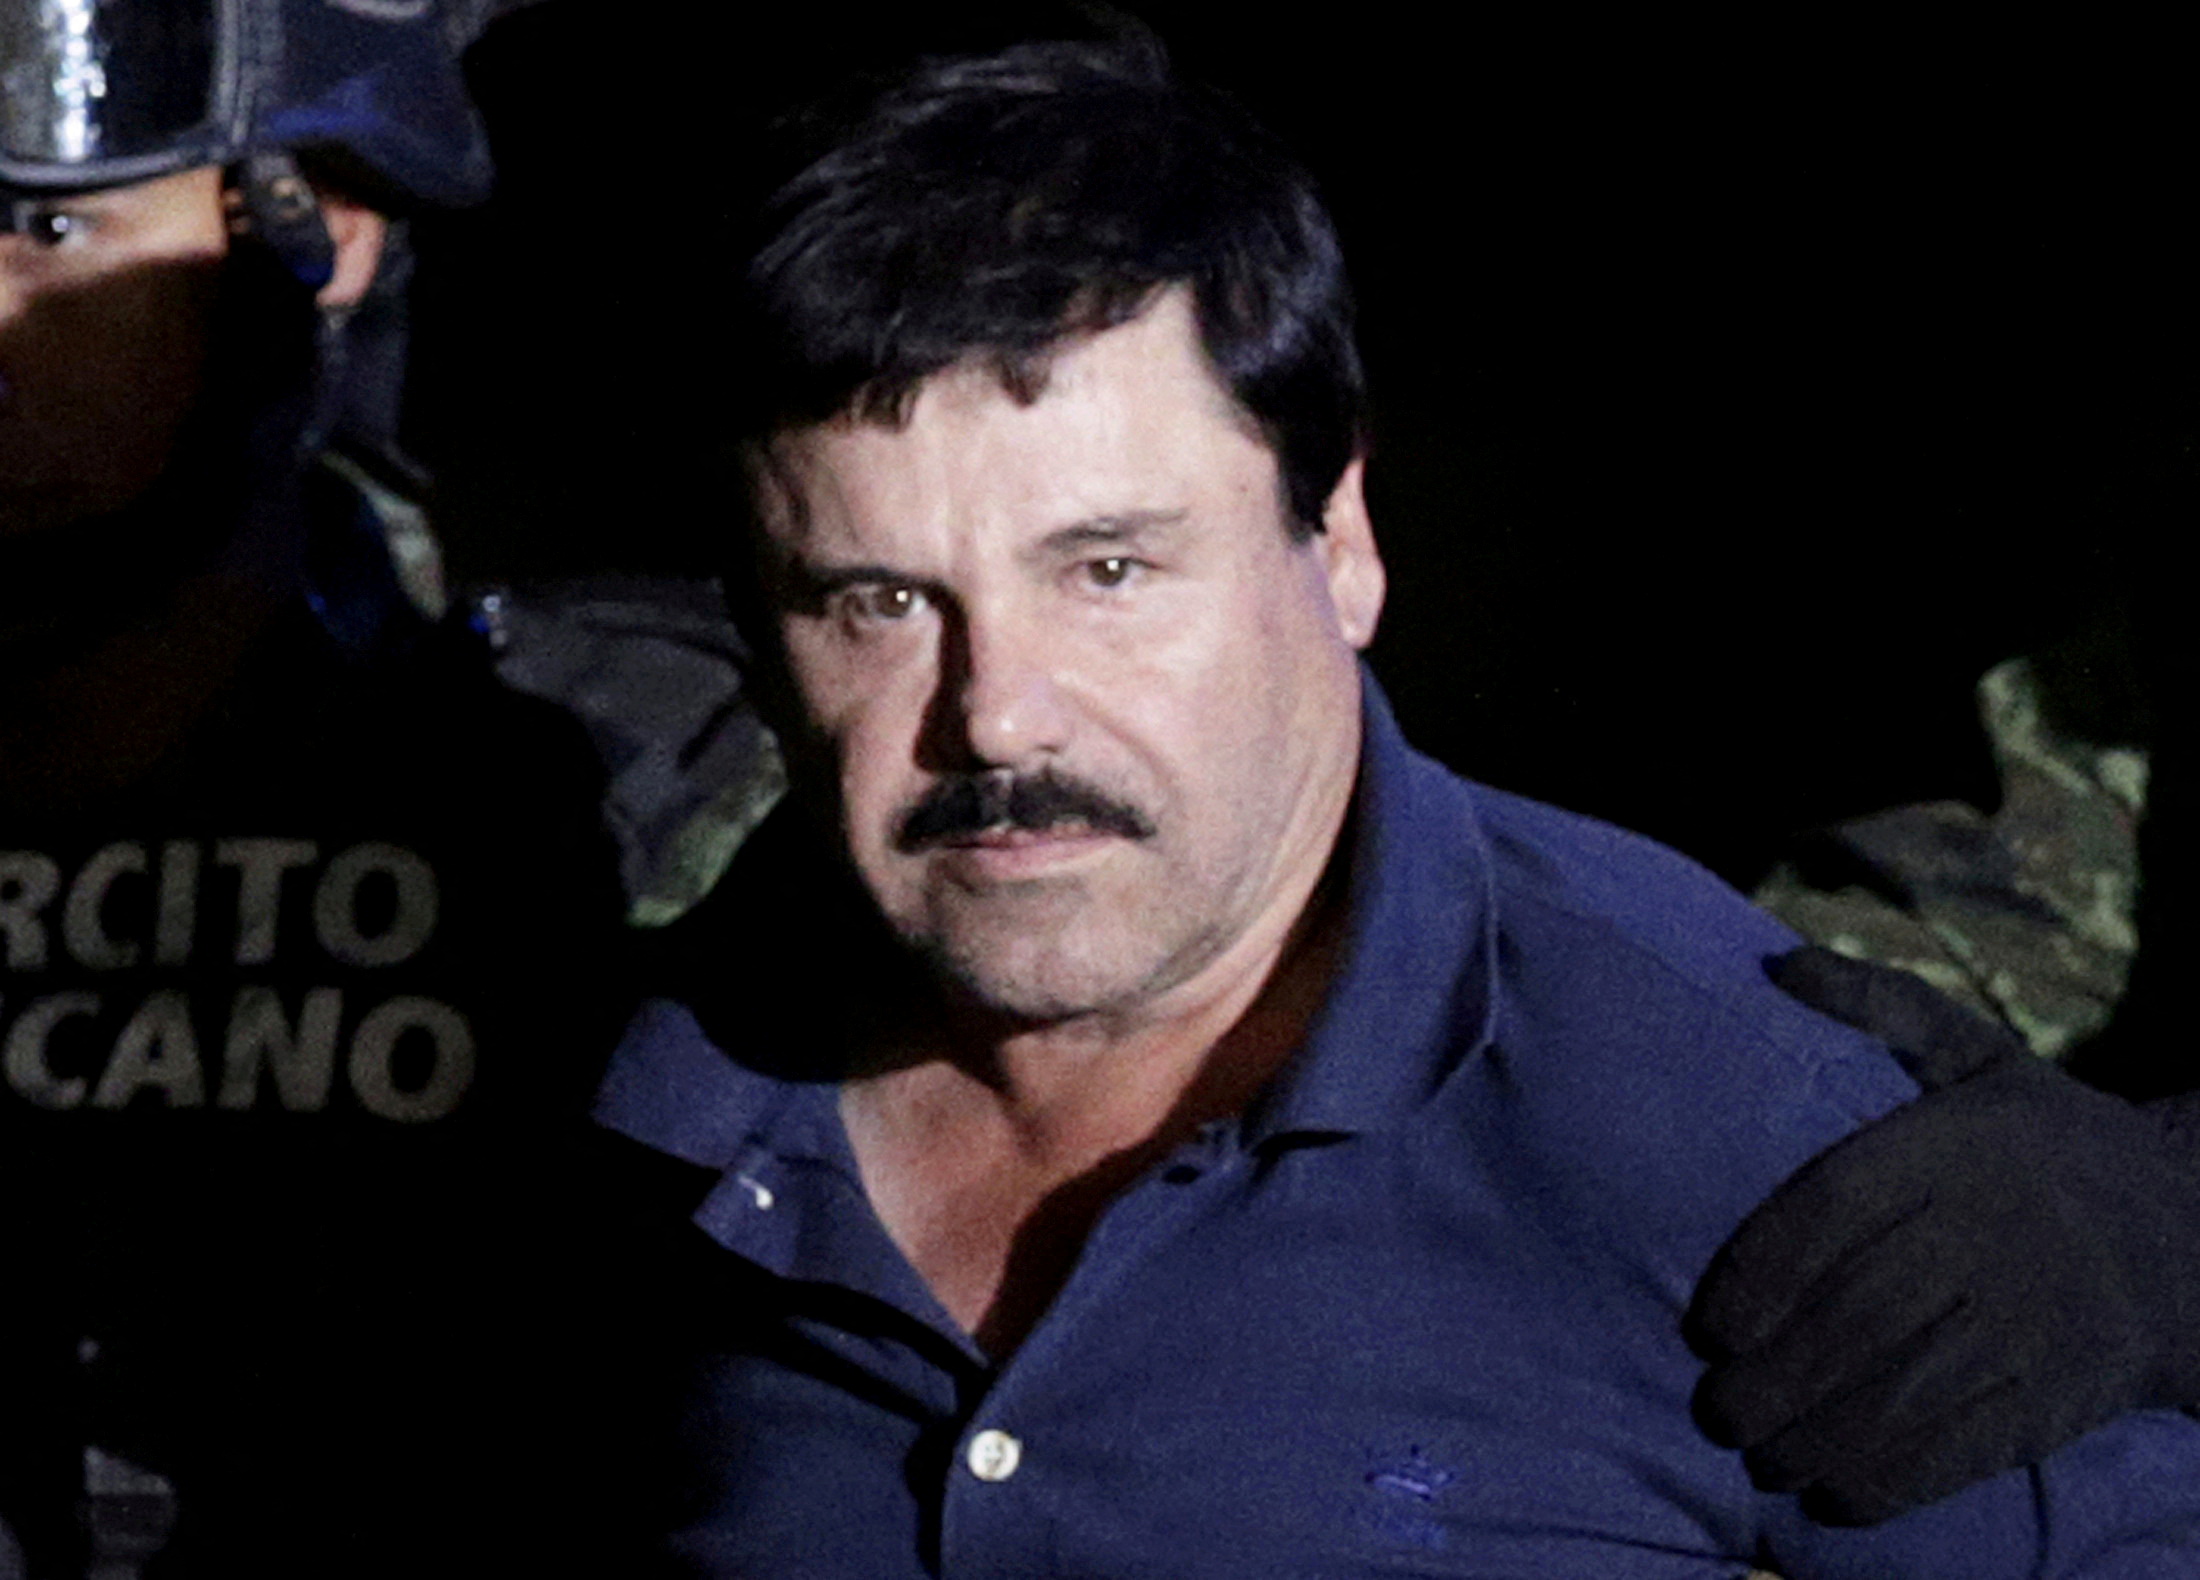 El sicario estaba bajo las órdenes del Chapo Guzmán (Foto: REUTERS)